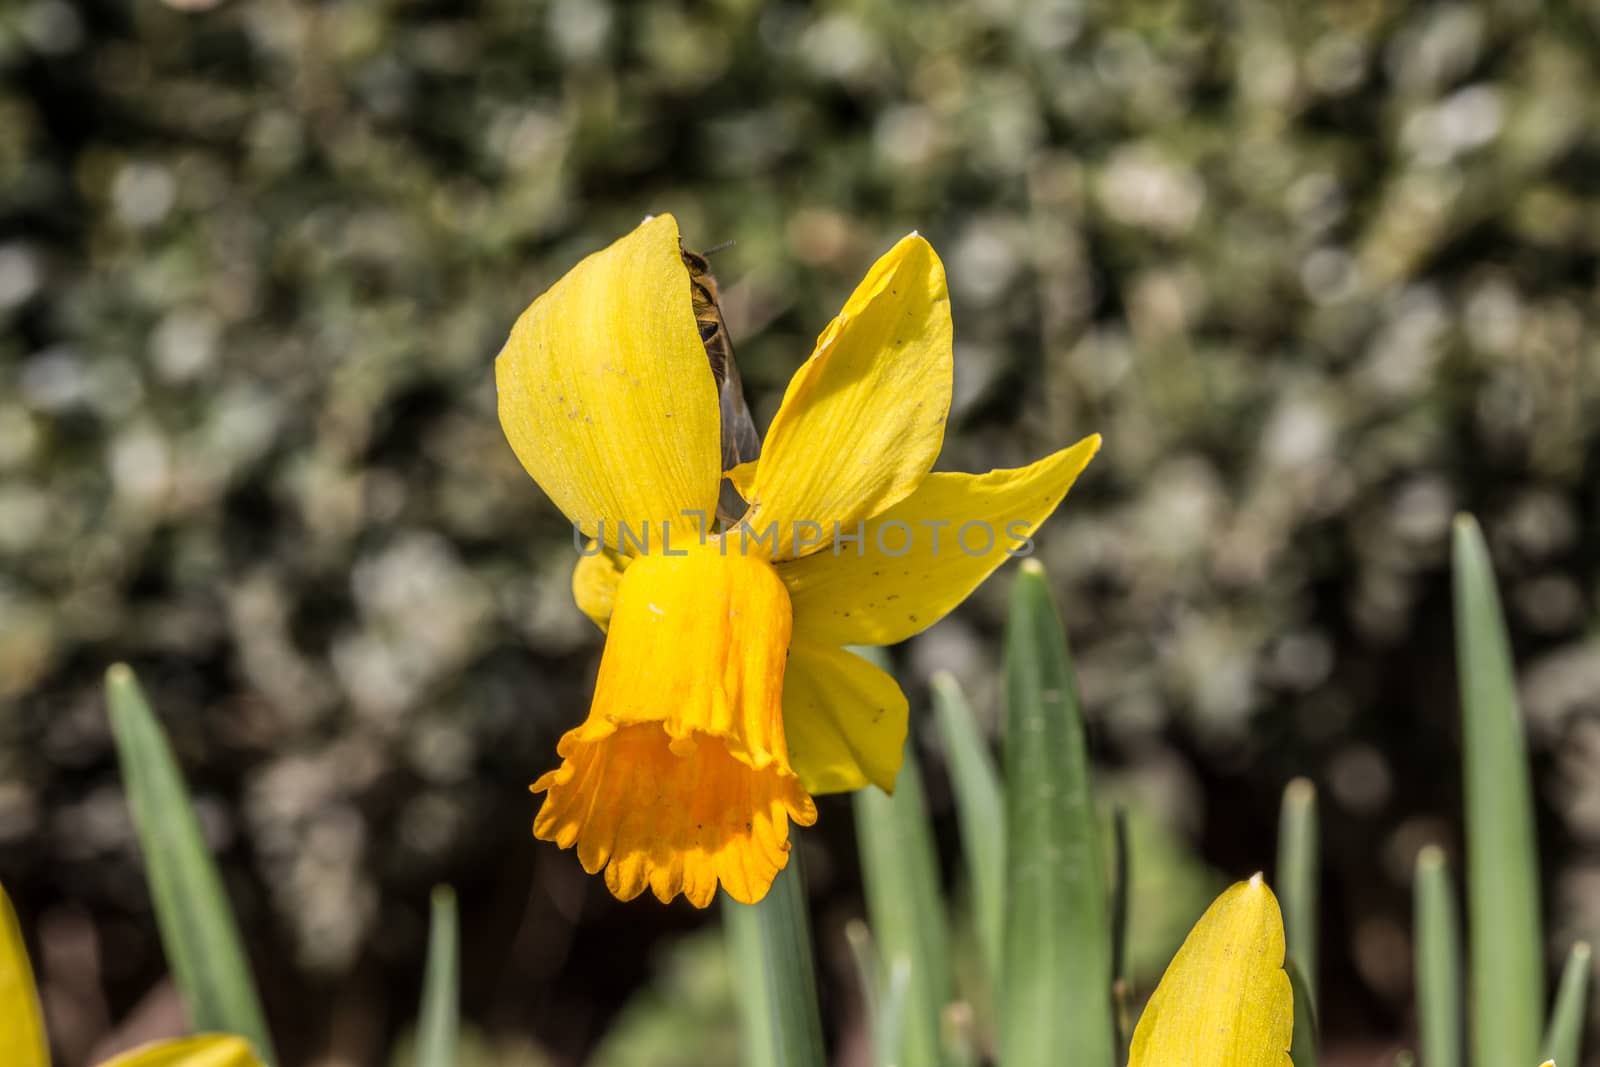 yellow daffodils or daffodils in spring